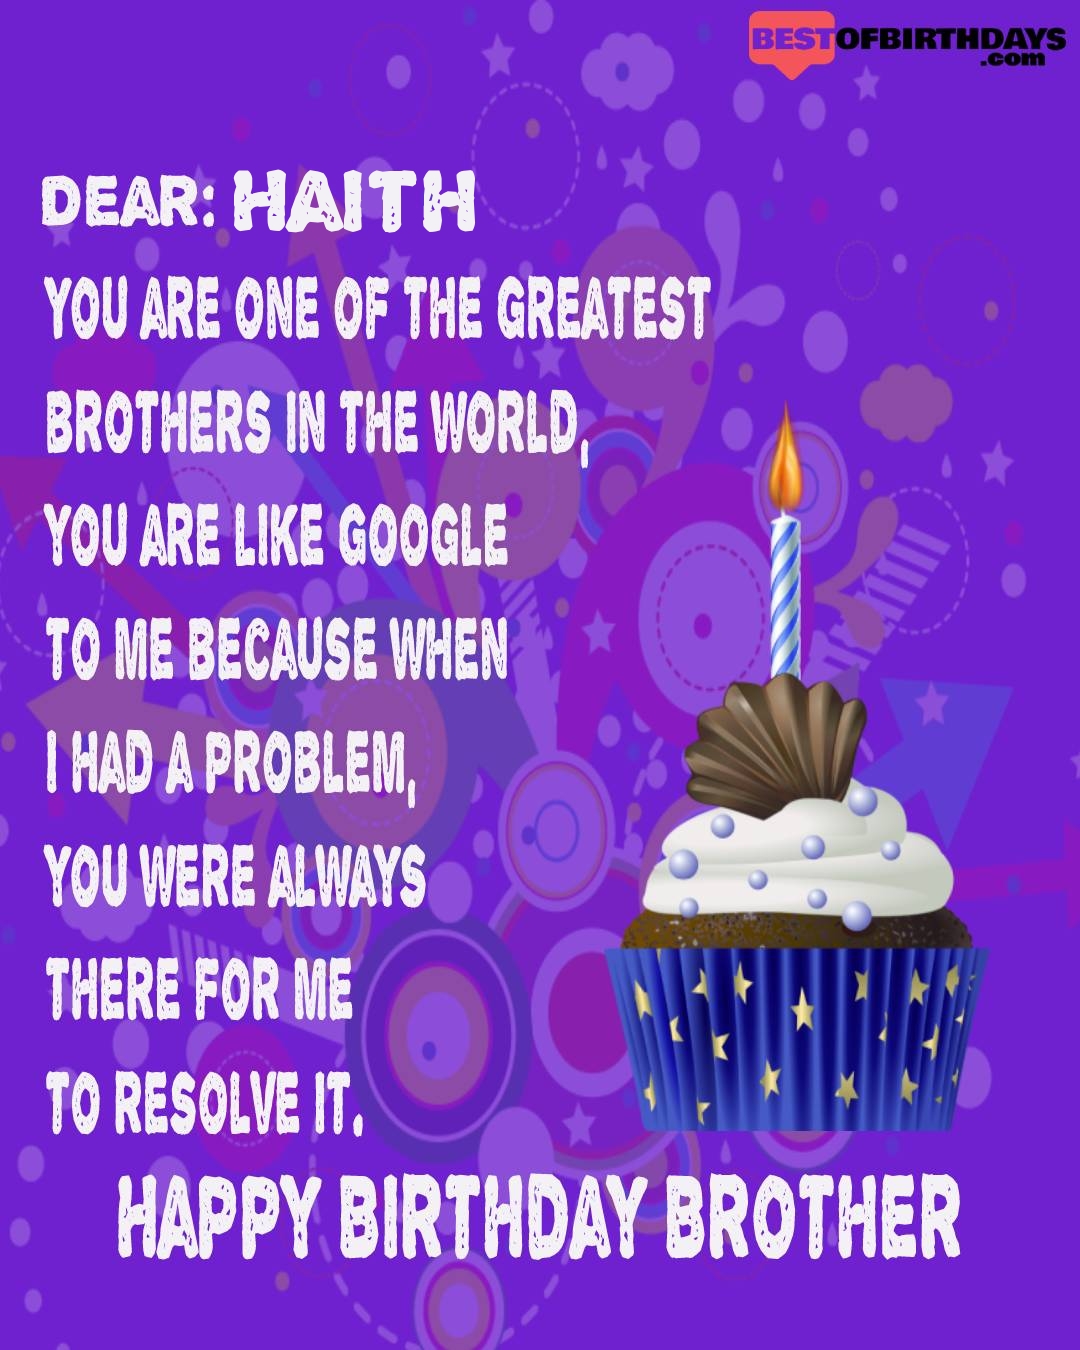 Happy birthday haith bhai brother bro